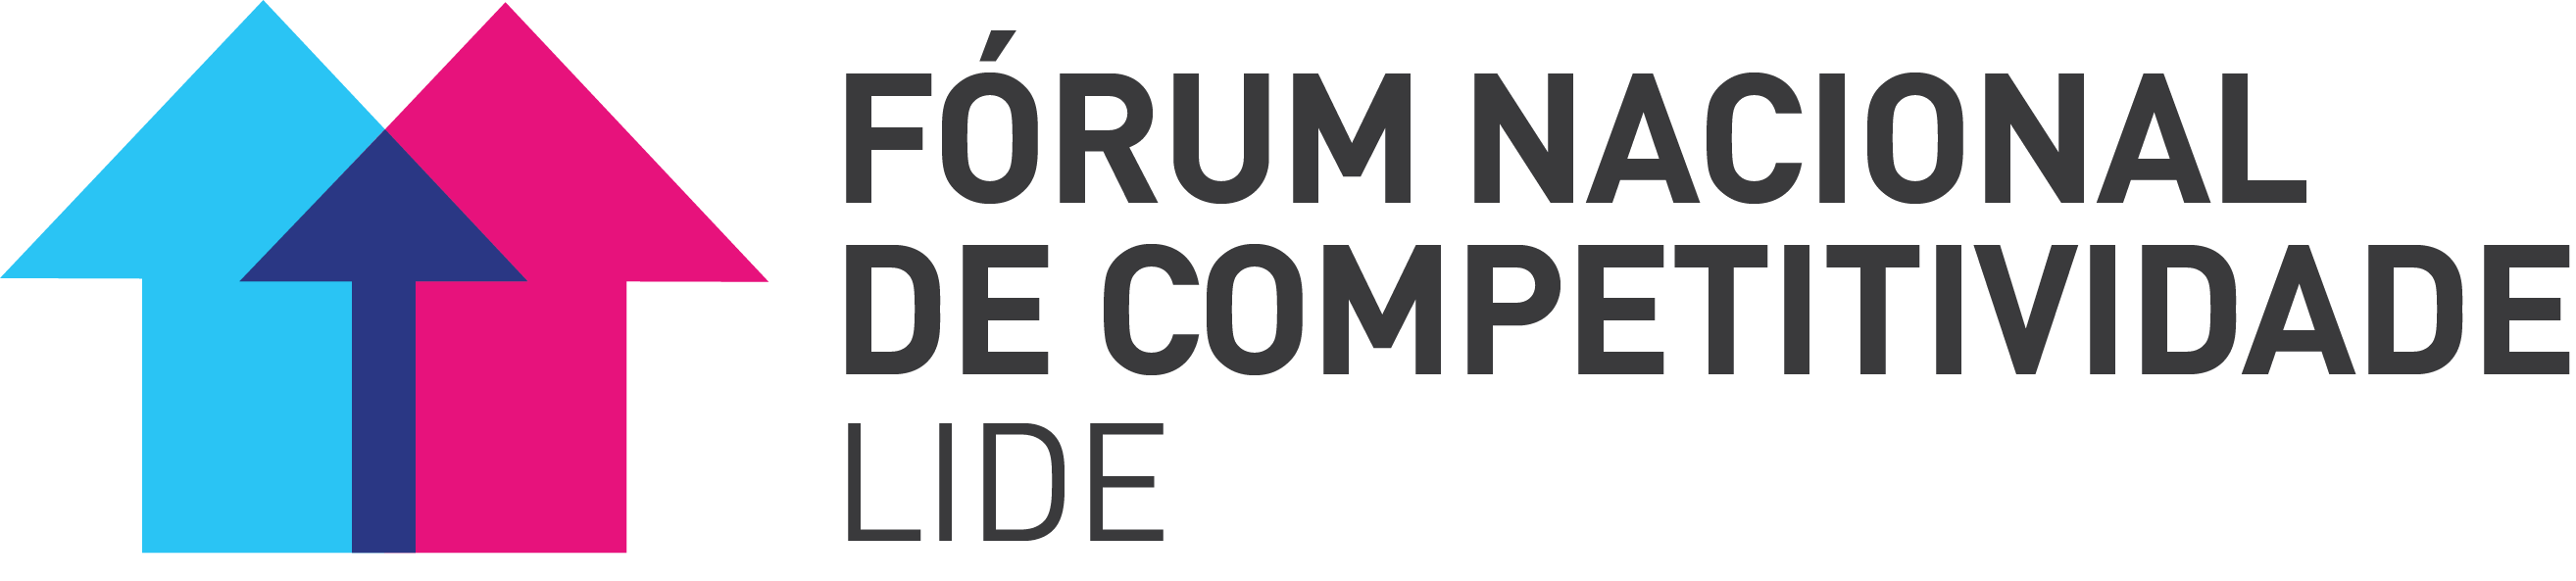 Fórum Nacional de Competitividade LIDE